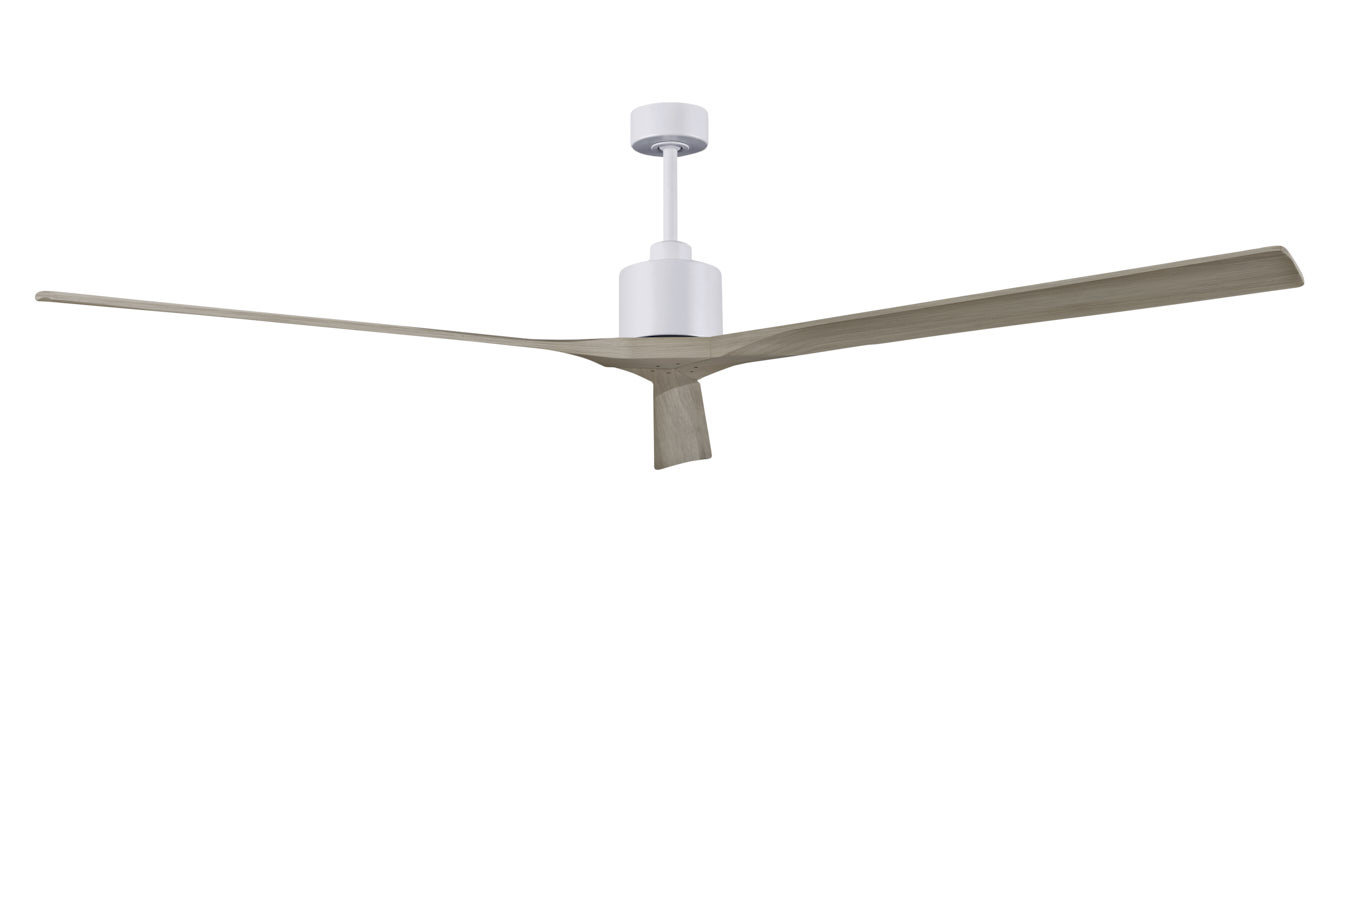 Nan XL ceiling fan in Matte White with 90” Gray Ash blades